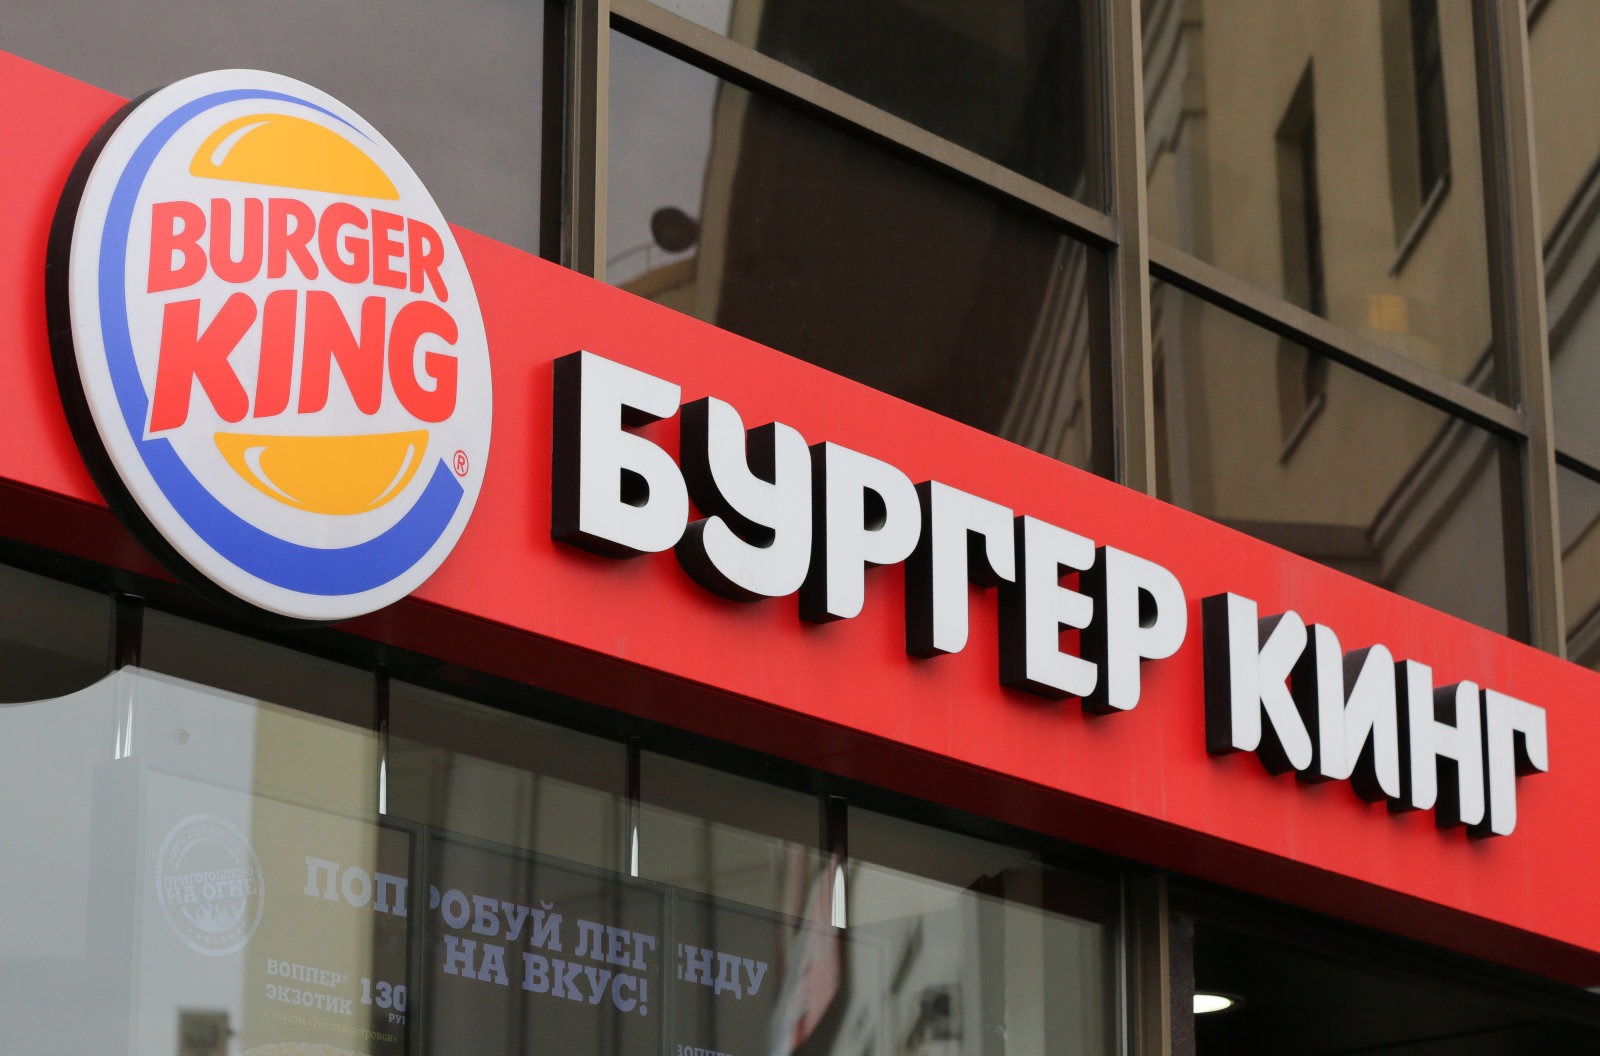 Ρωσία: Τα Burger King προσφέρουν 3 εκ. ρούβλια σε γυναίκες που θα μείνουν έγκυοι από ποδοσφαιριστές του Μουντιάλ! (φωτό)